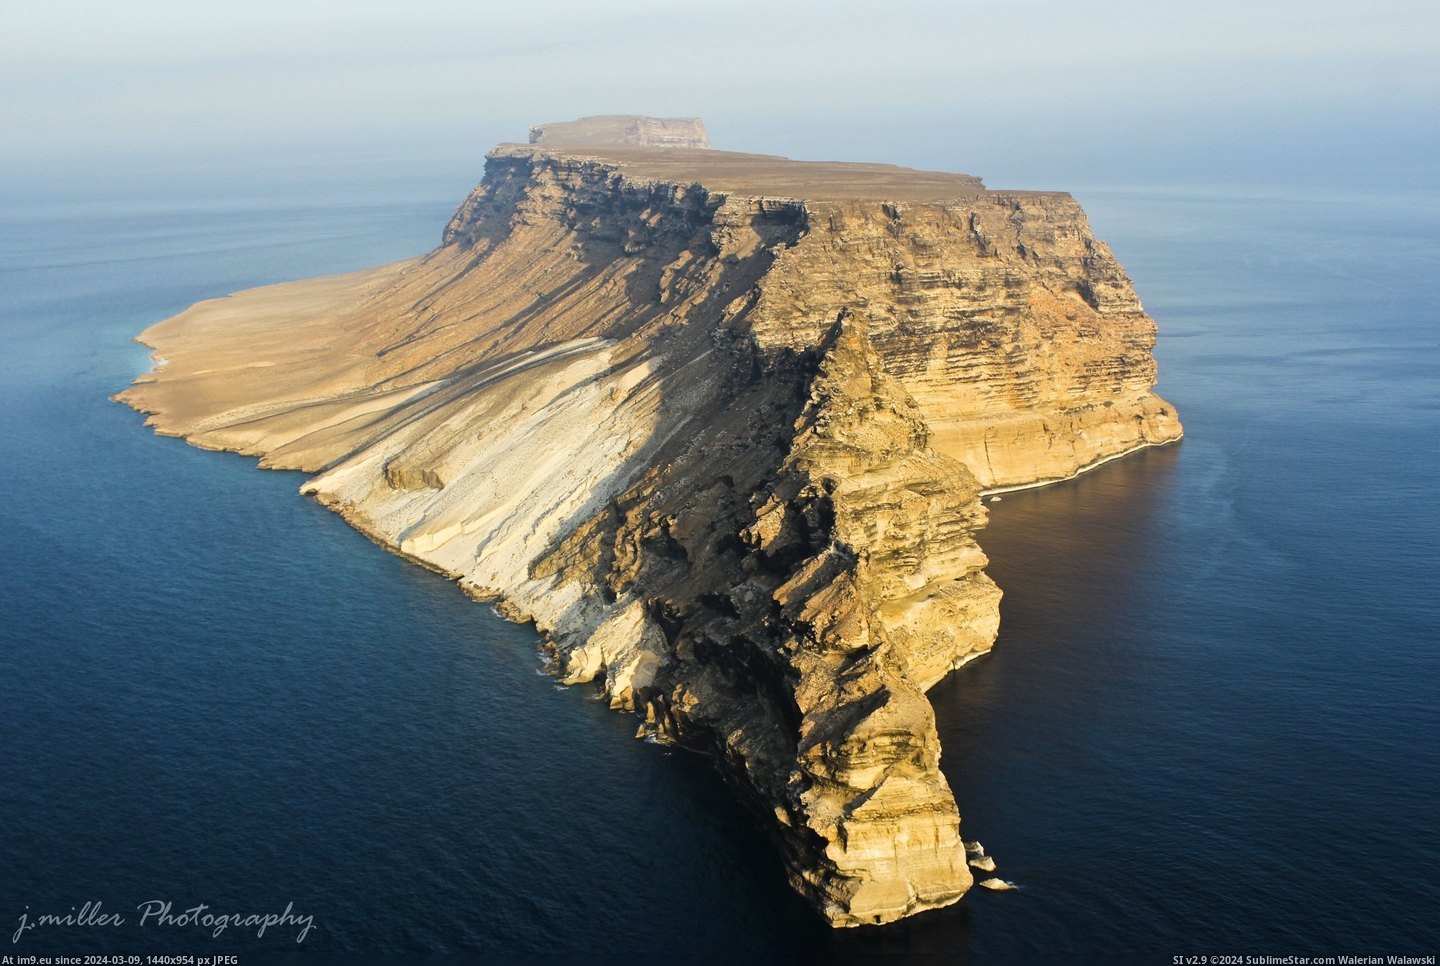 #Island #Public #Yemen #Darsa #Aerial #Photograph [Earthporn] Darsa Island, Yemen. Only known public aerial photograph of this island. [OC][2,073 × 3,110] Pic. (Image of album My r/EARTHPORN favs))